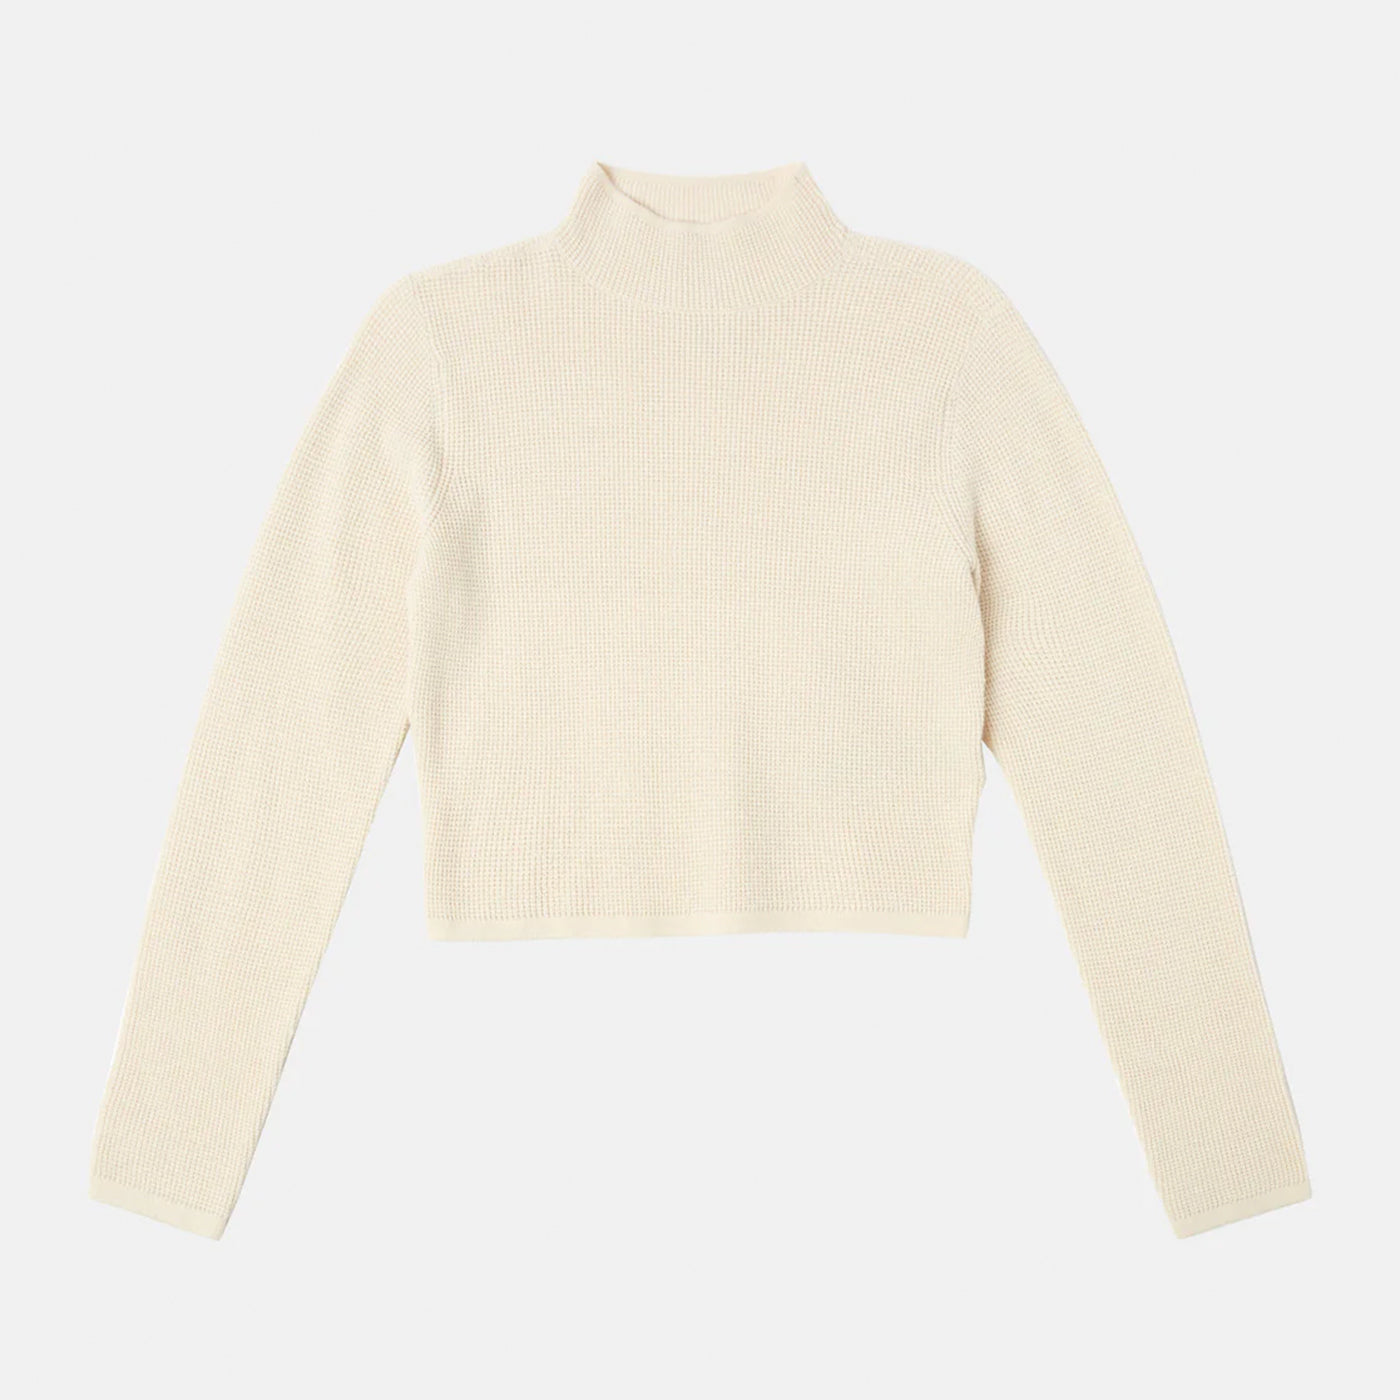 RVCA | Apres Sweater Crop Top | Latte